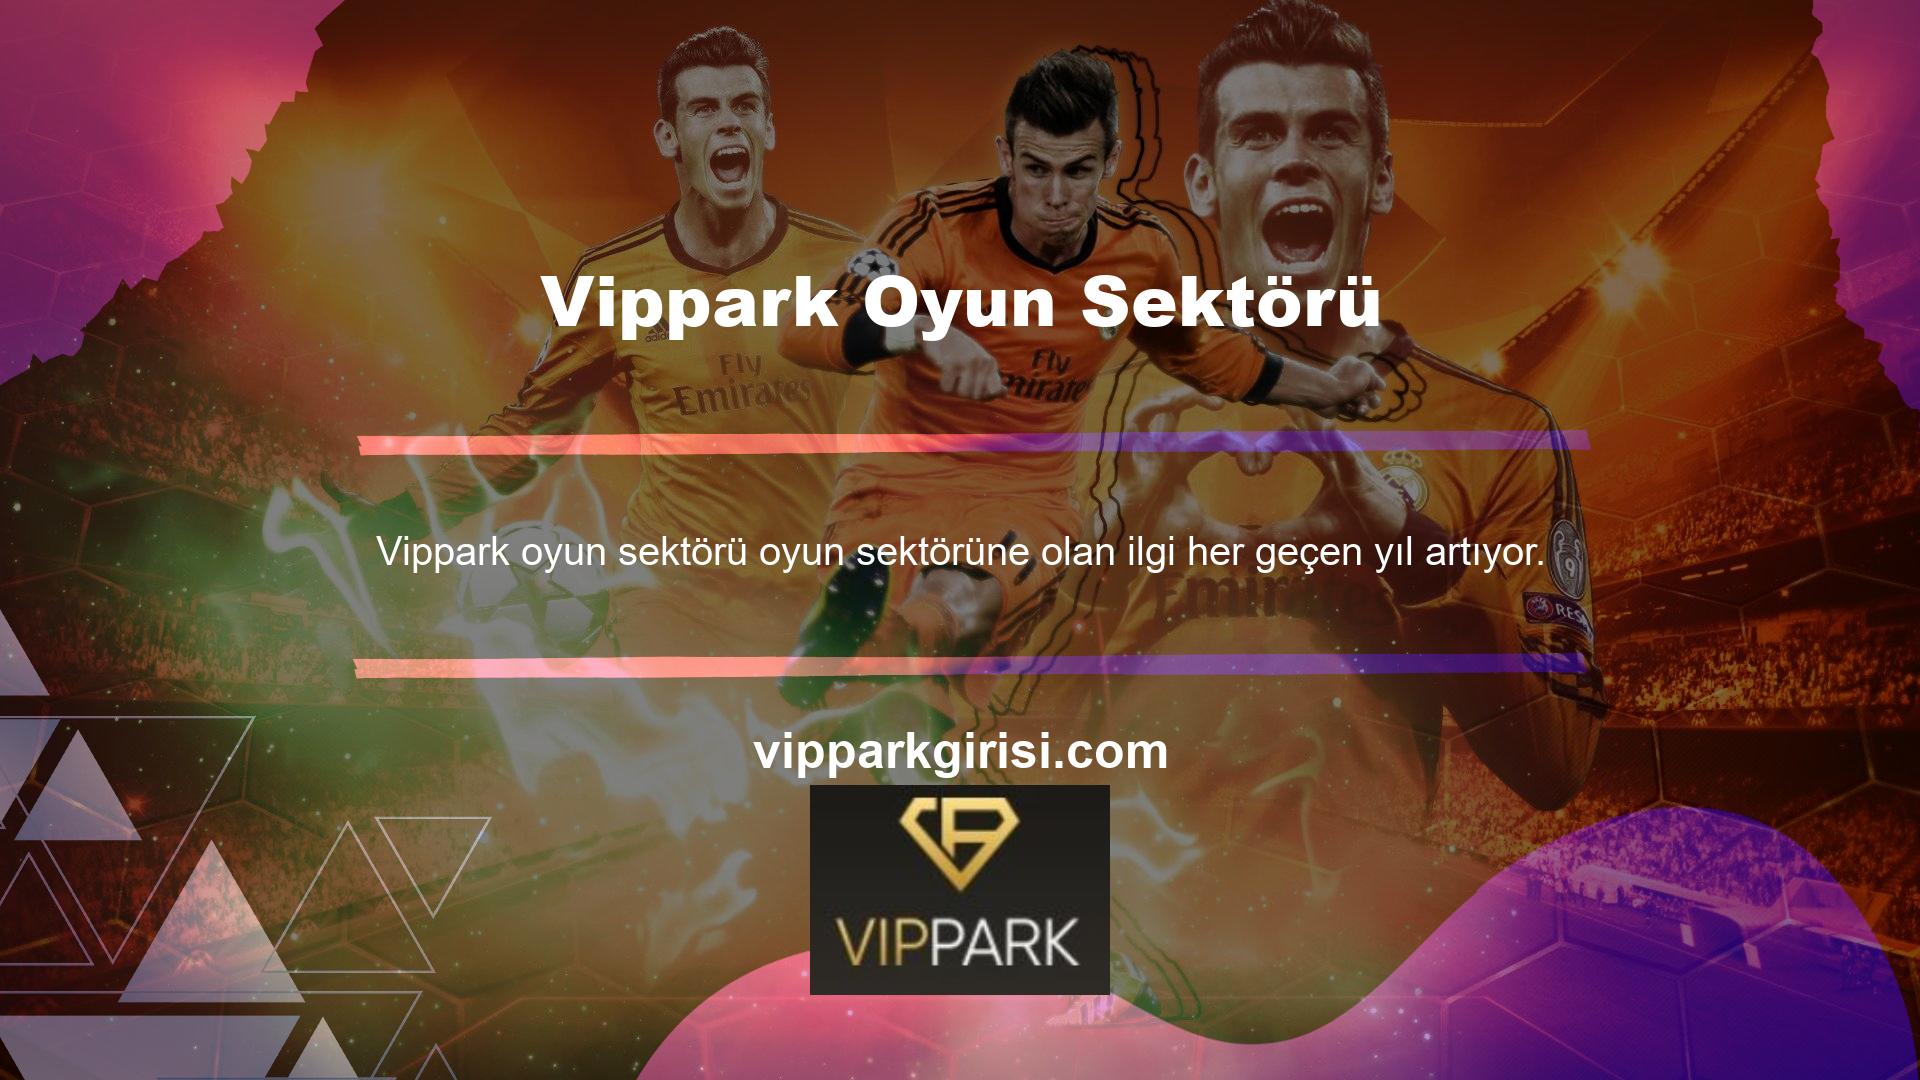 Vippark üyelerinin sayısı artmaya devam ediyor ve Vippark müşterilerine güvenilir bahis siteleri aracılığıyla hizmet vermeye devam ediyoruz